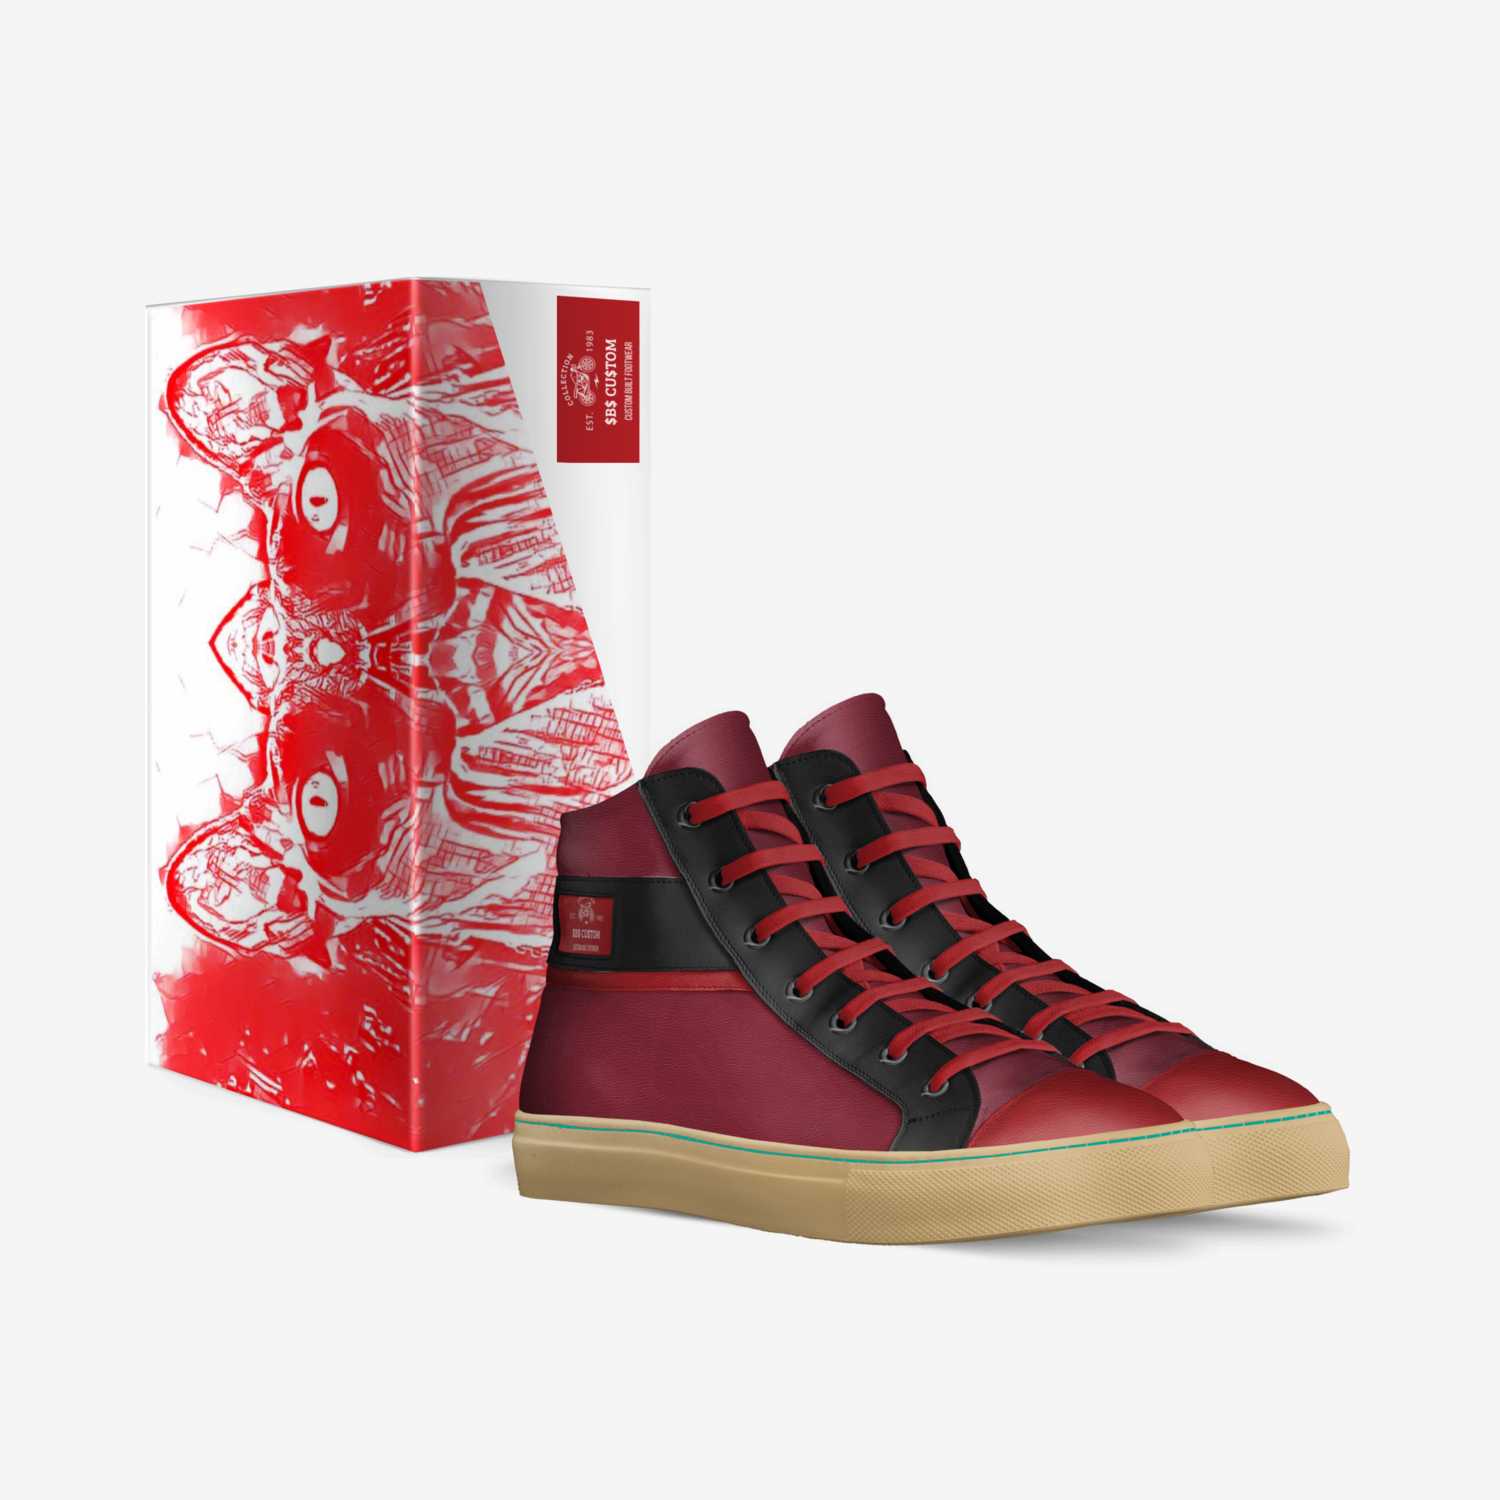 $B$ CU$TOM custom made in Italy shoes by Sacha Raeburn | Box view